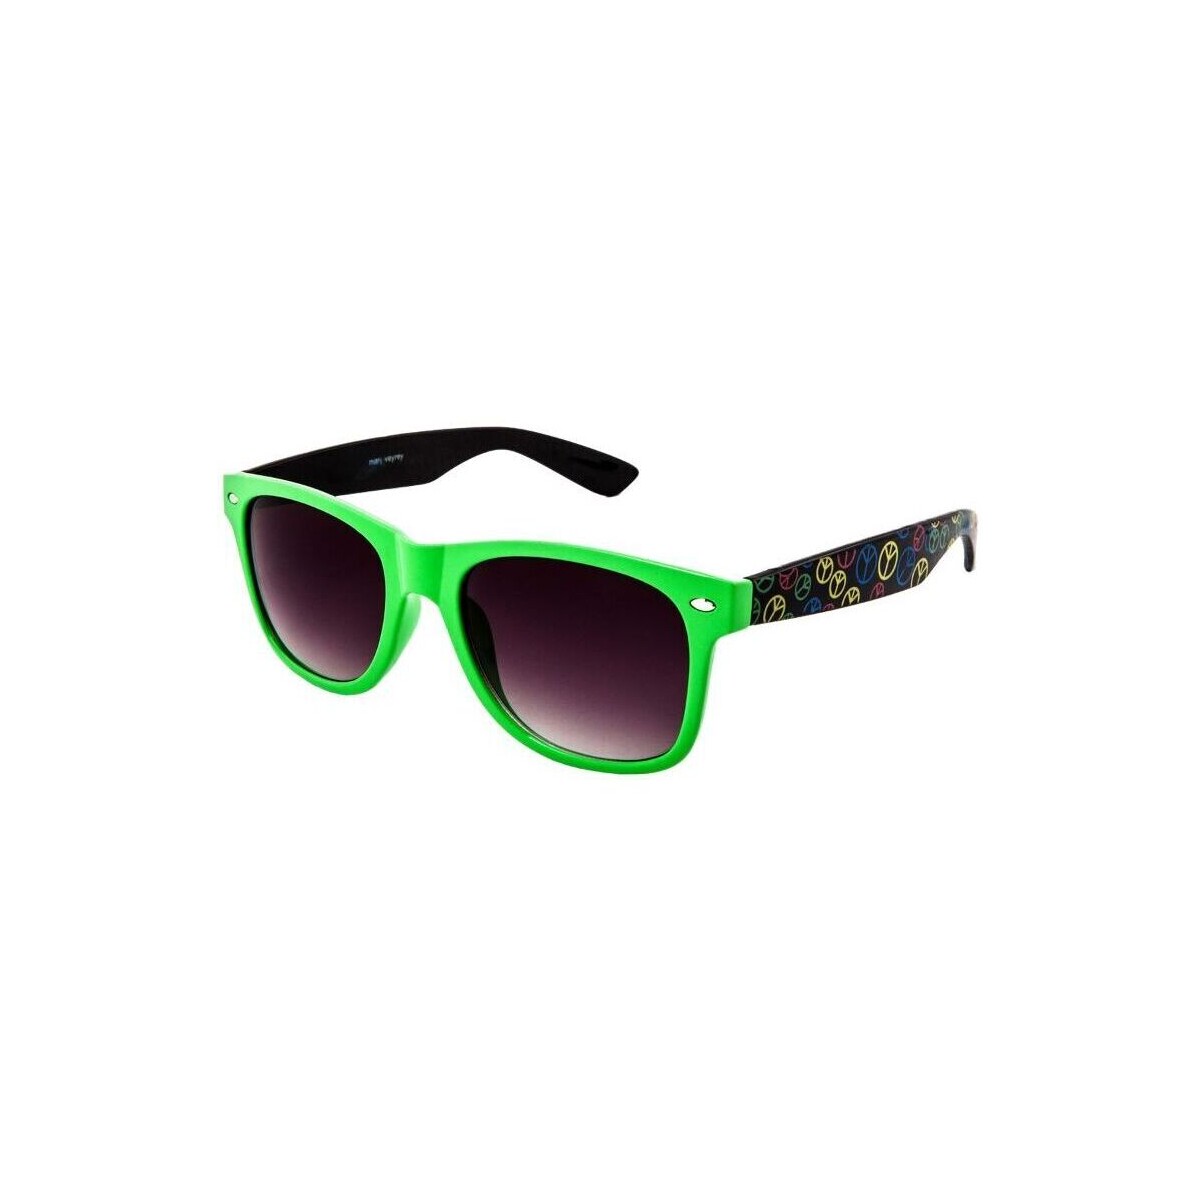 Hodinky & Bižuterie sluneční brýle Oem Sluneční brýle Nerd Peace zeleno-černá Zelená